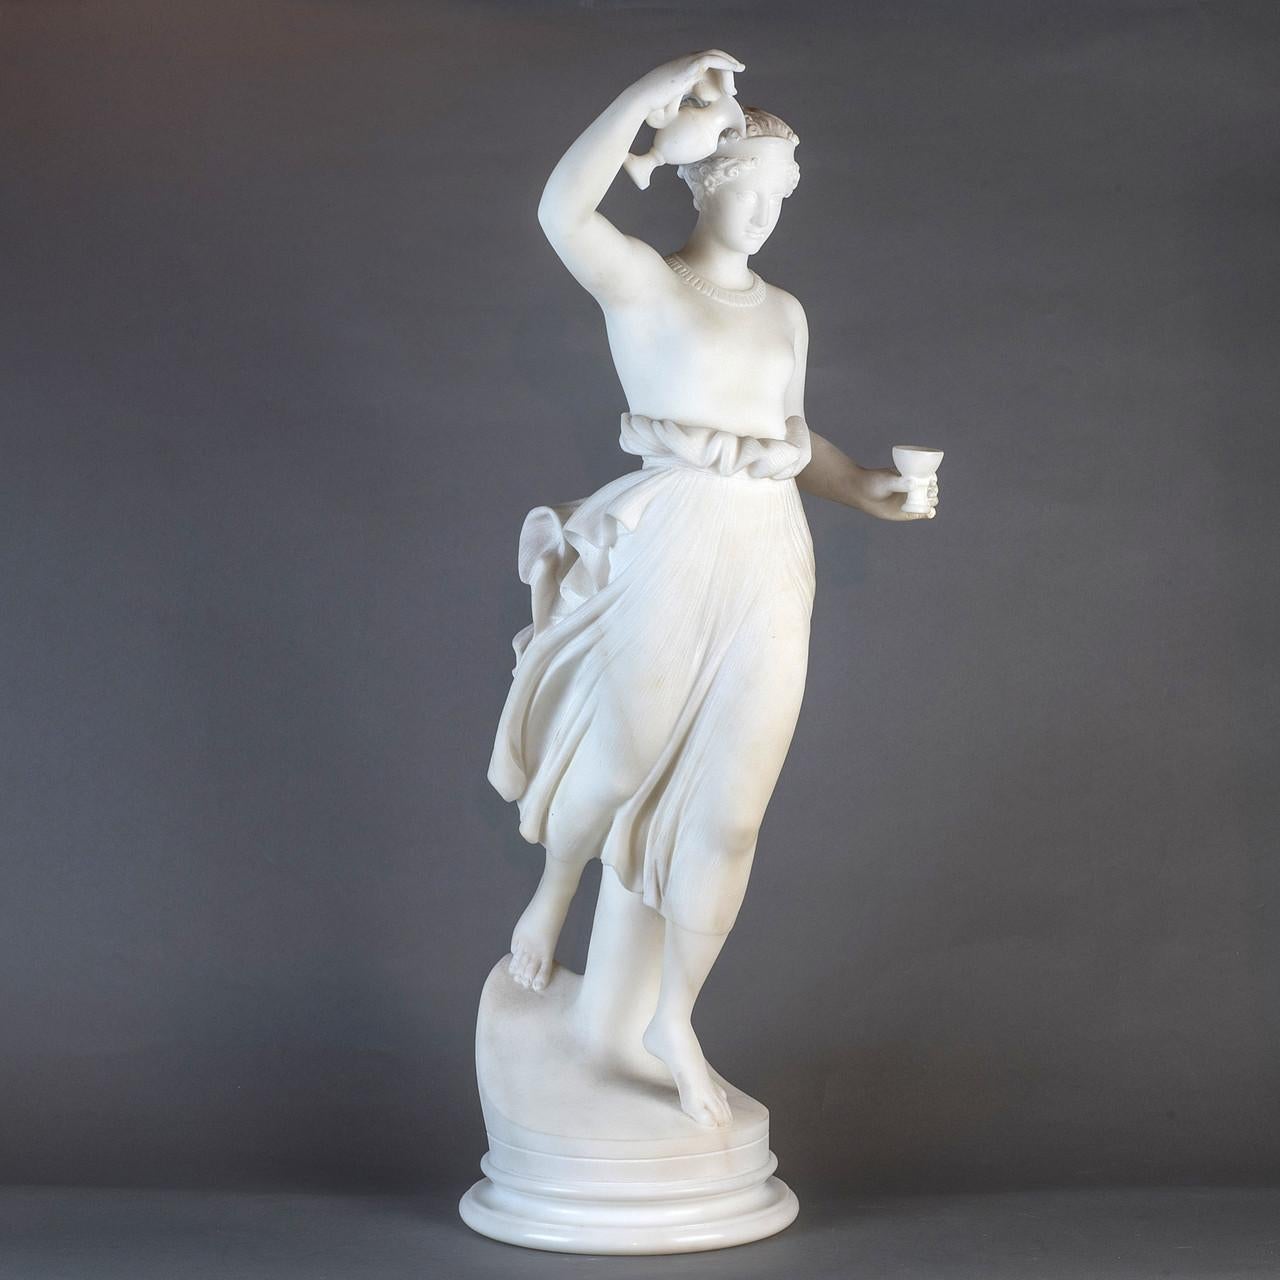 Figurative Sculpture Unknown - Marbre néoclassique finement sculpté représentant une figure féminine debout